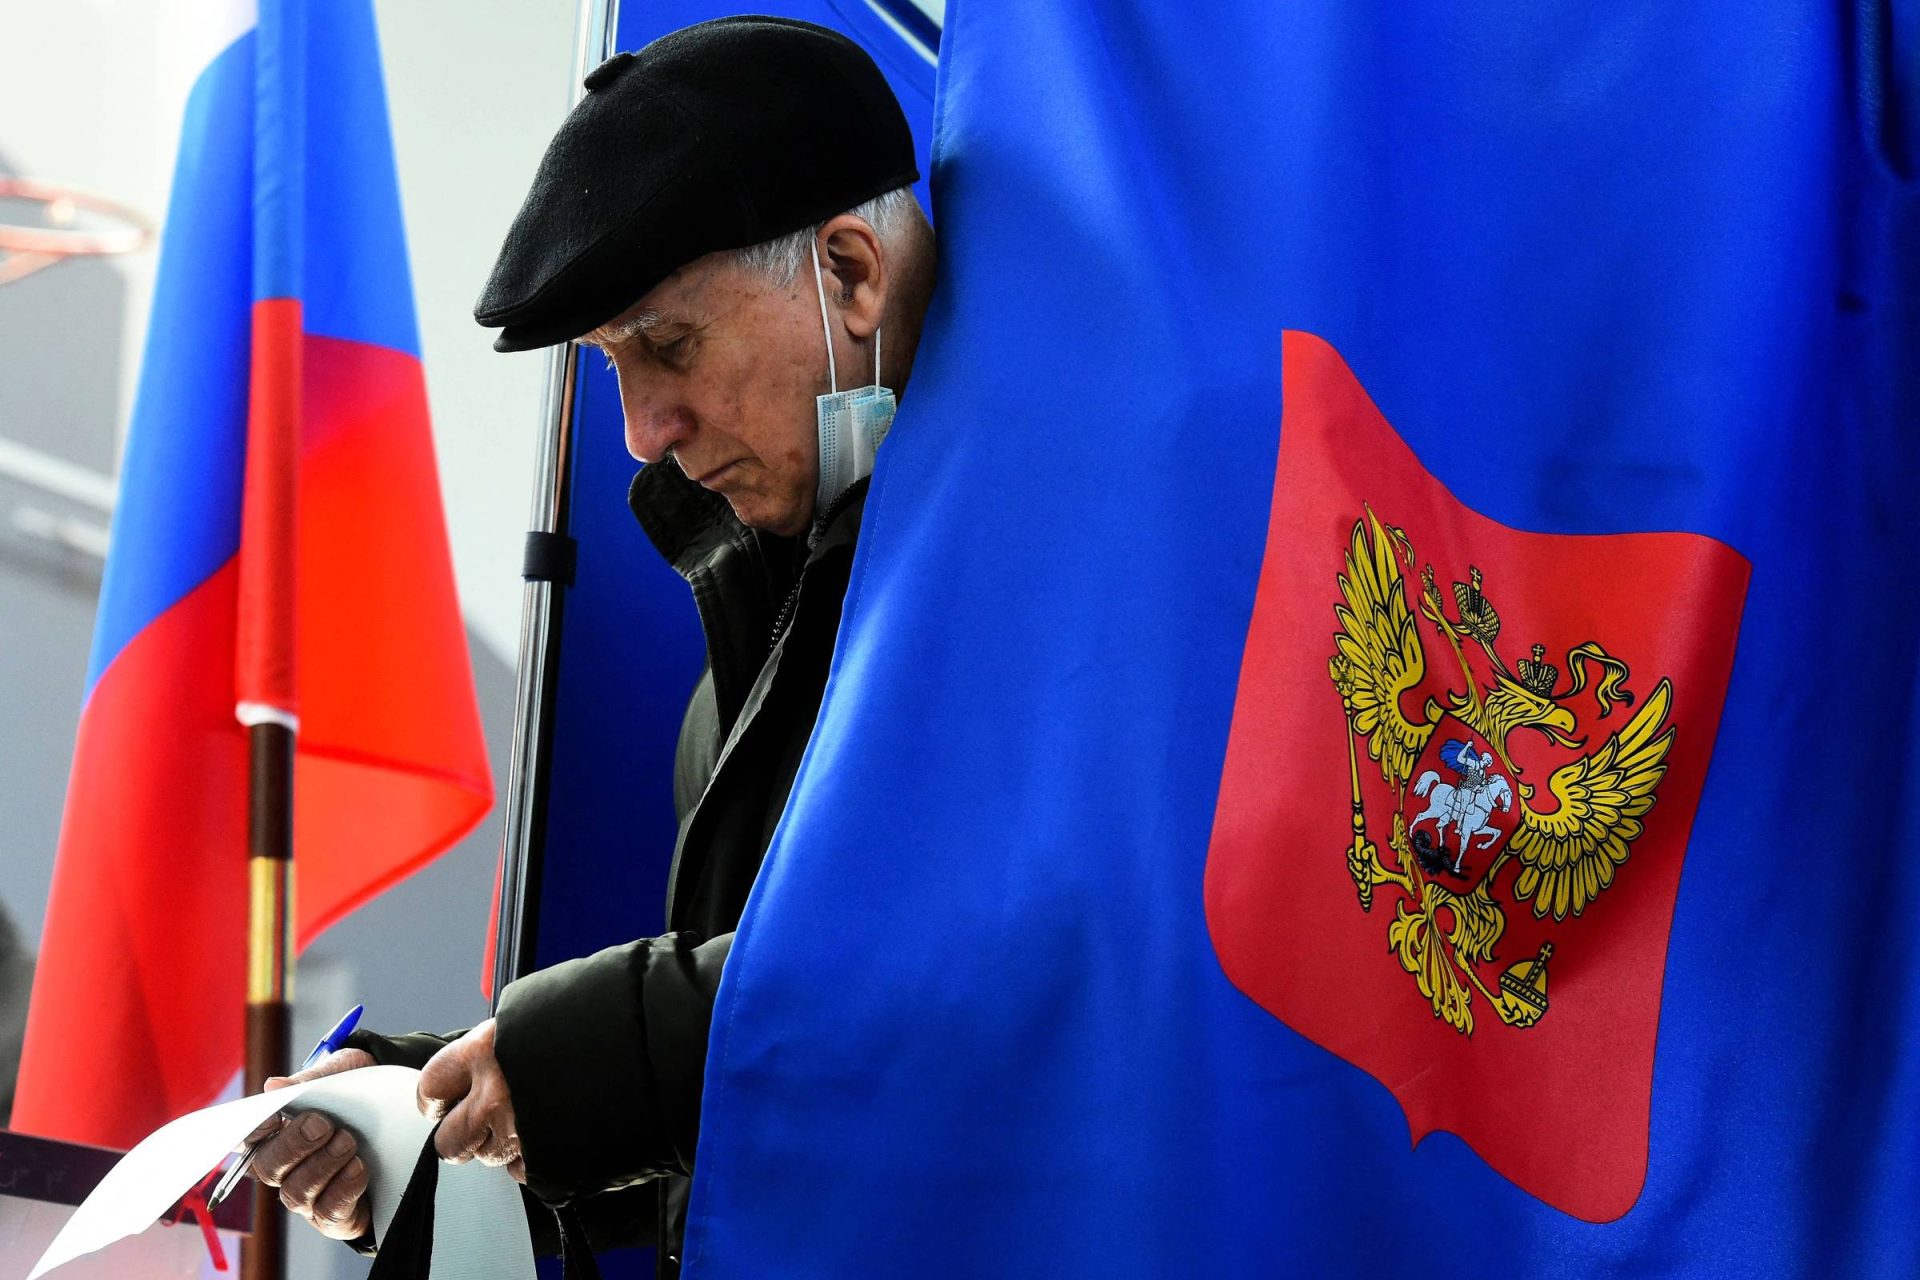 Partido de Putin vence eleições marcadas por alegações de fraude